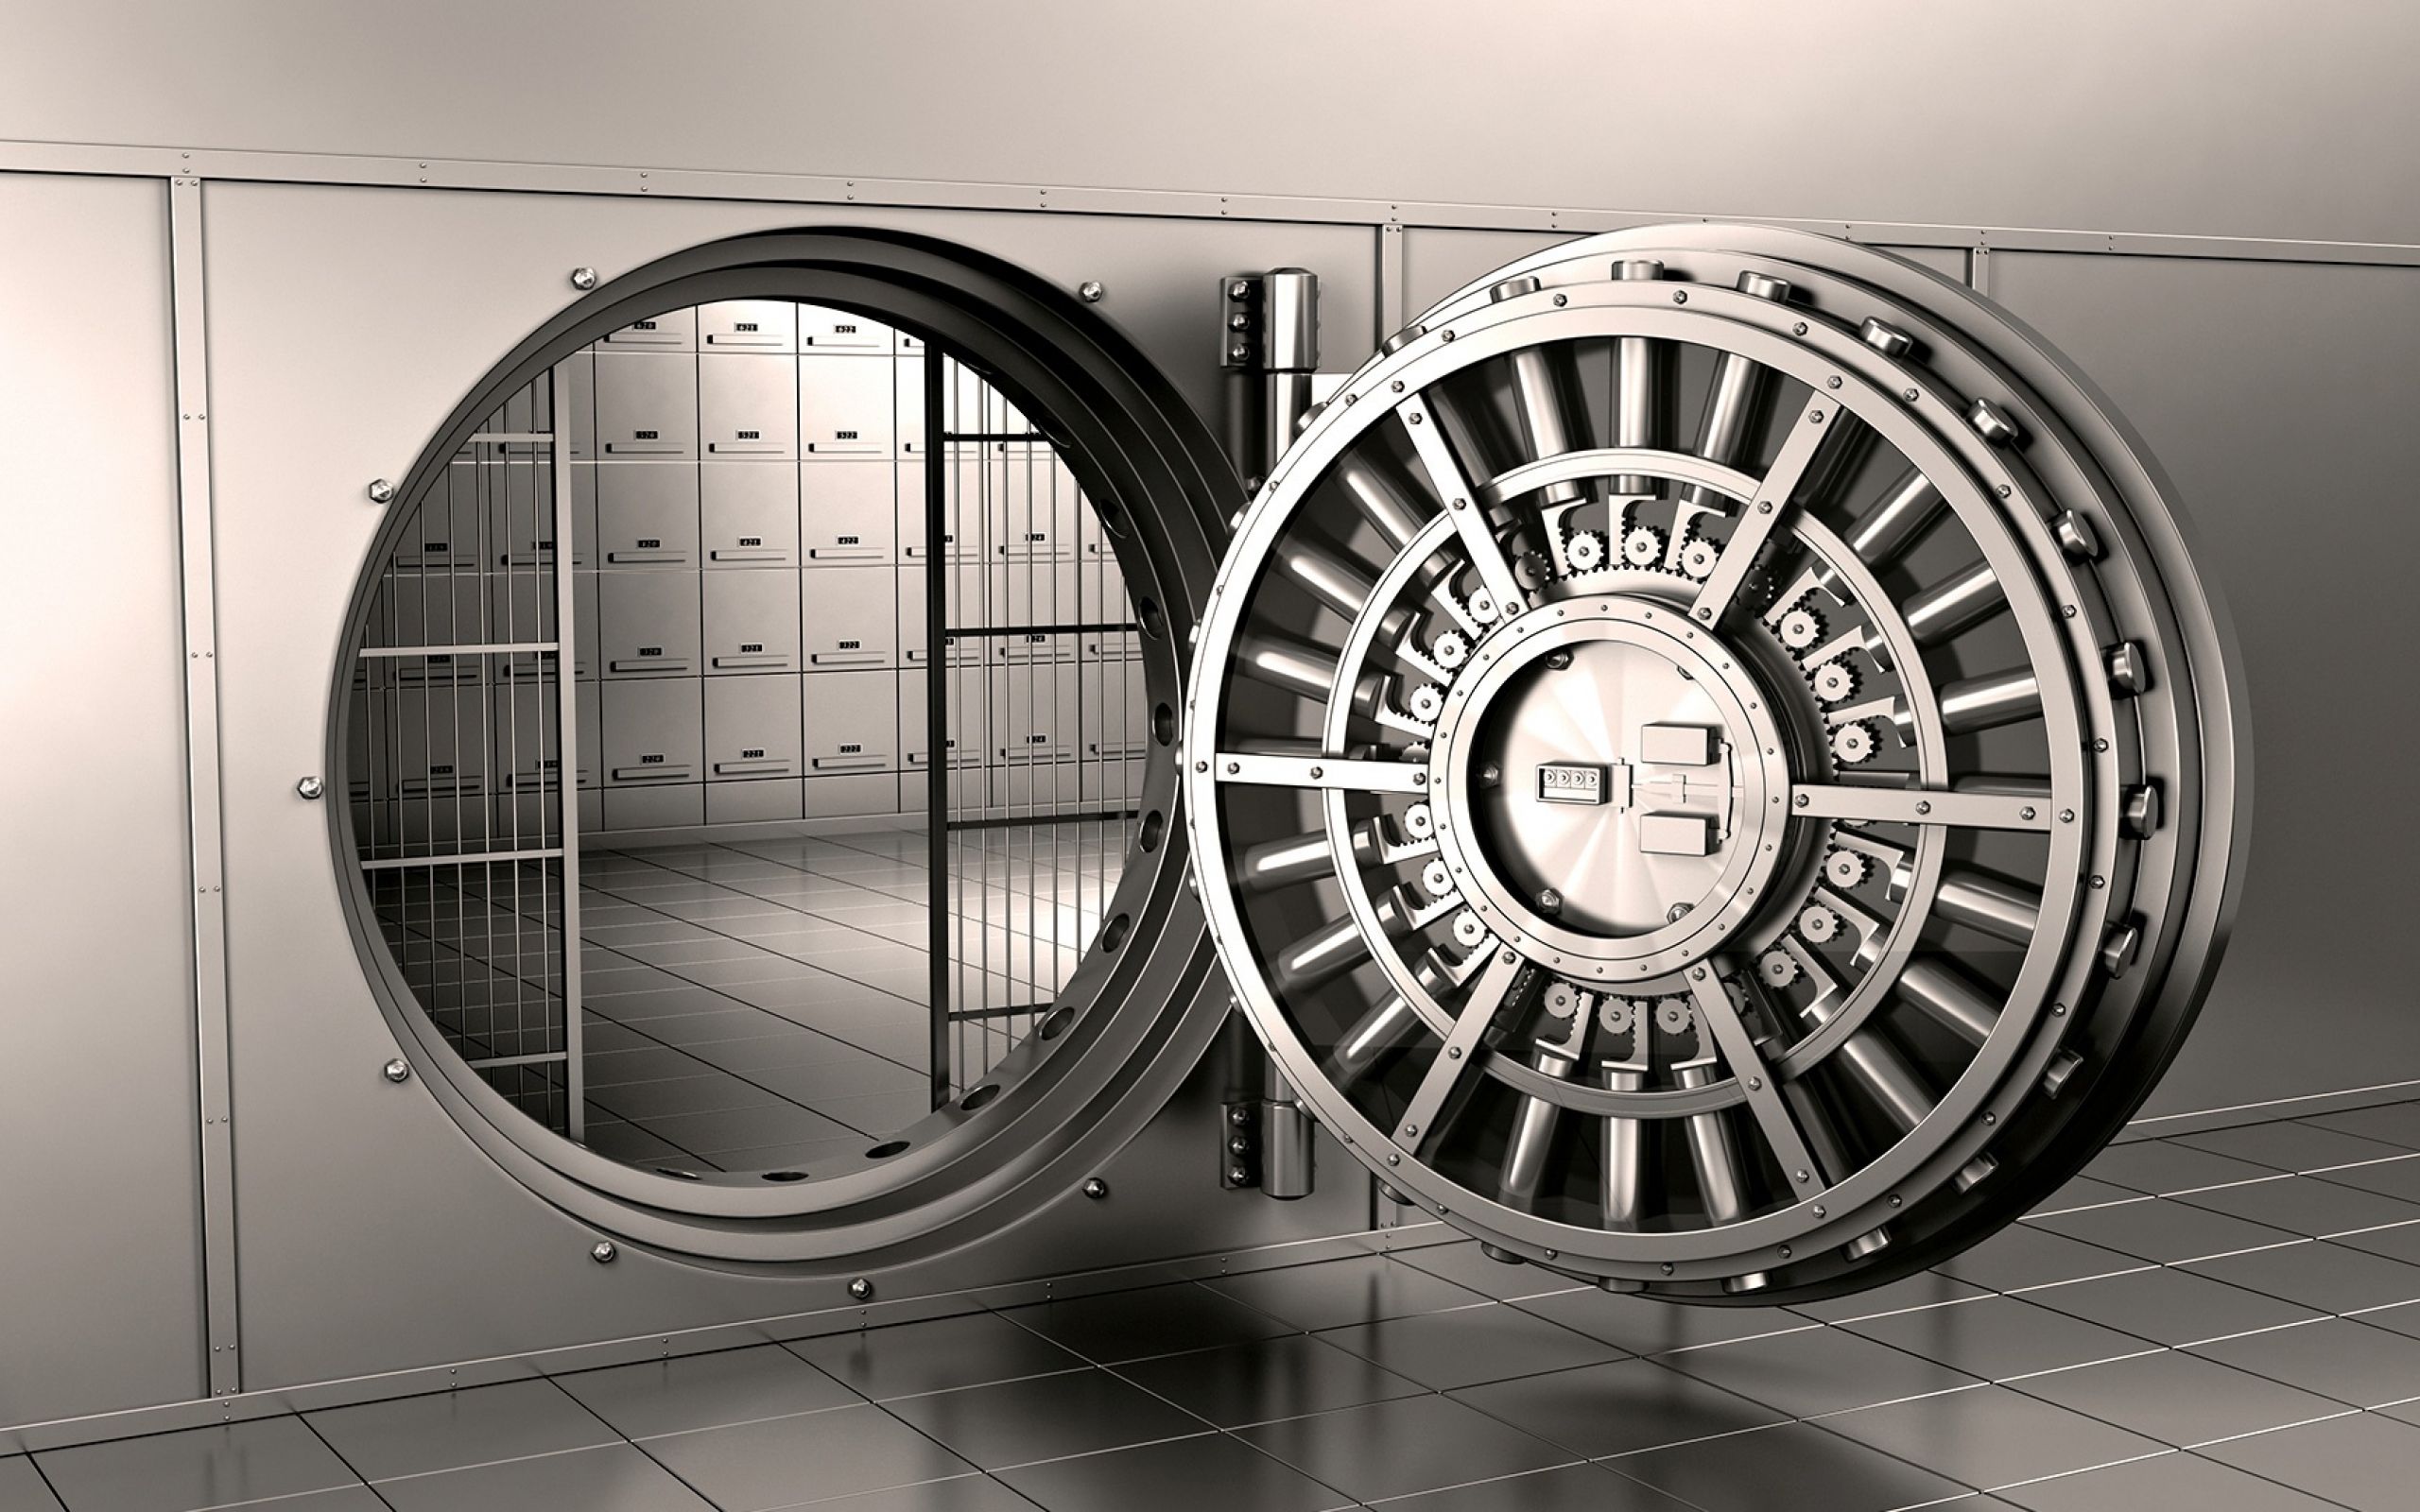 Bank vaults. Сейфовая дверь для хранилища монолит м07б. Банковский сейф. Хранилище банка. Дверь банковского хранилища.